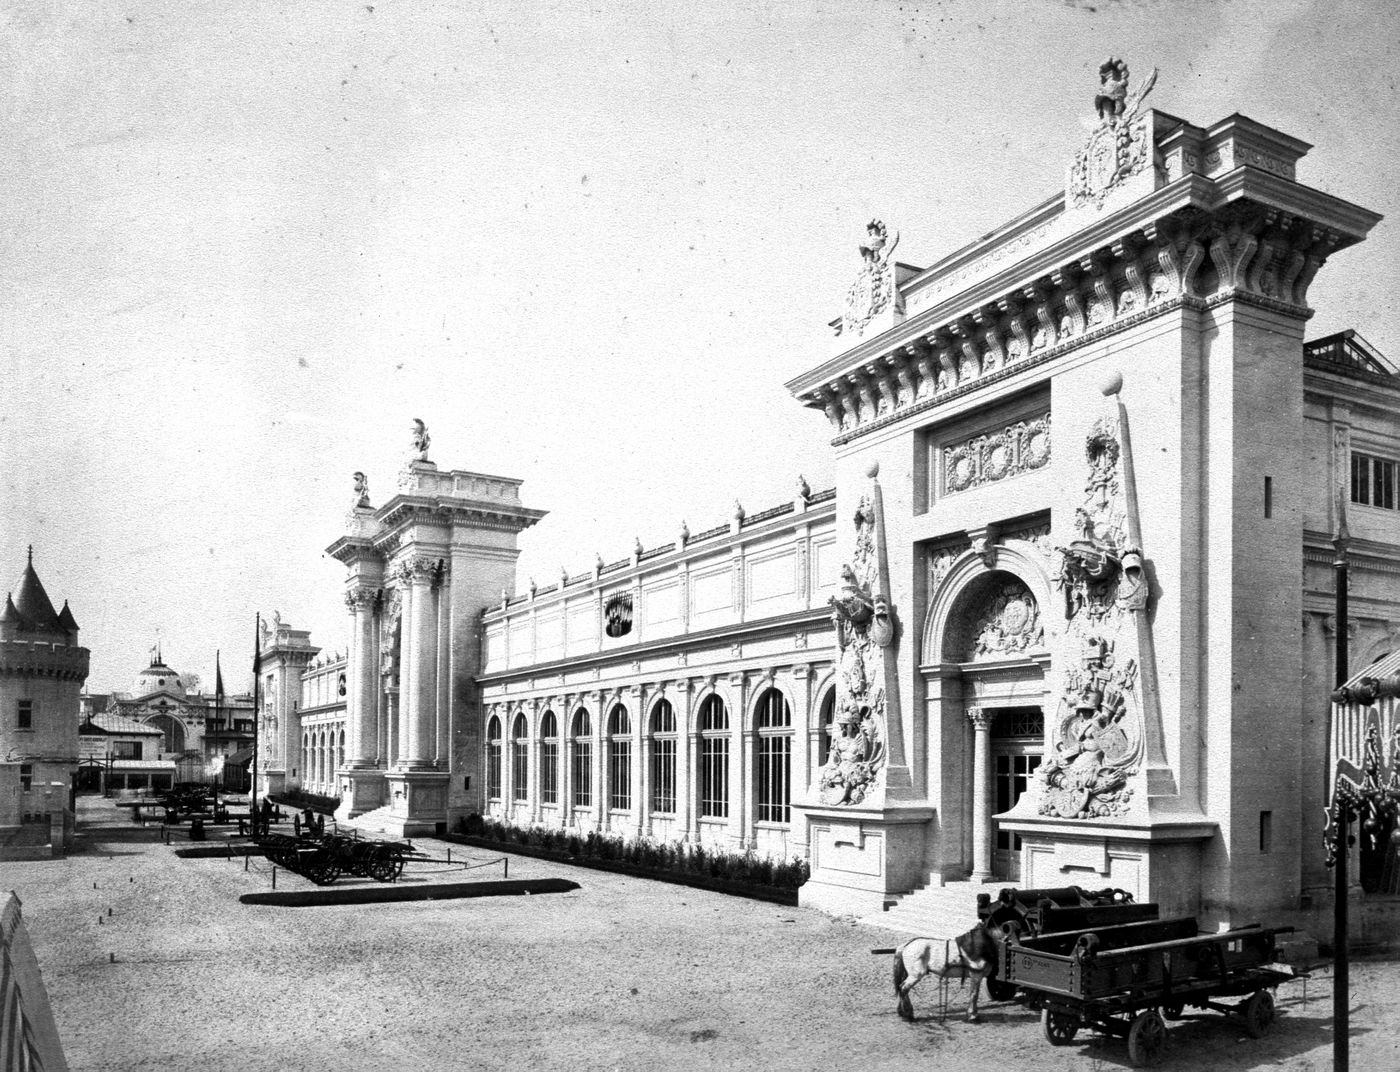 View of War Ministry Pavillon, Exposition universelle de 1889, Paris, France